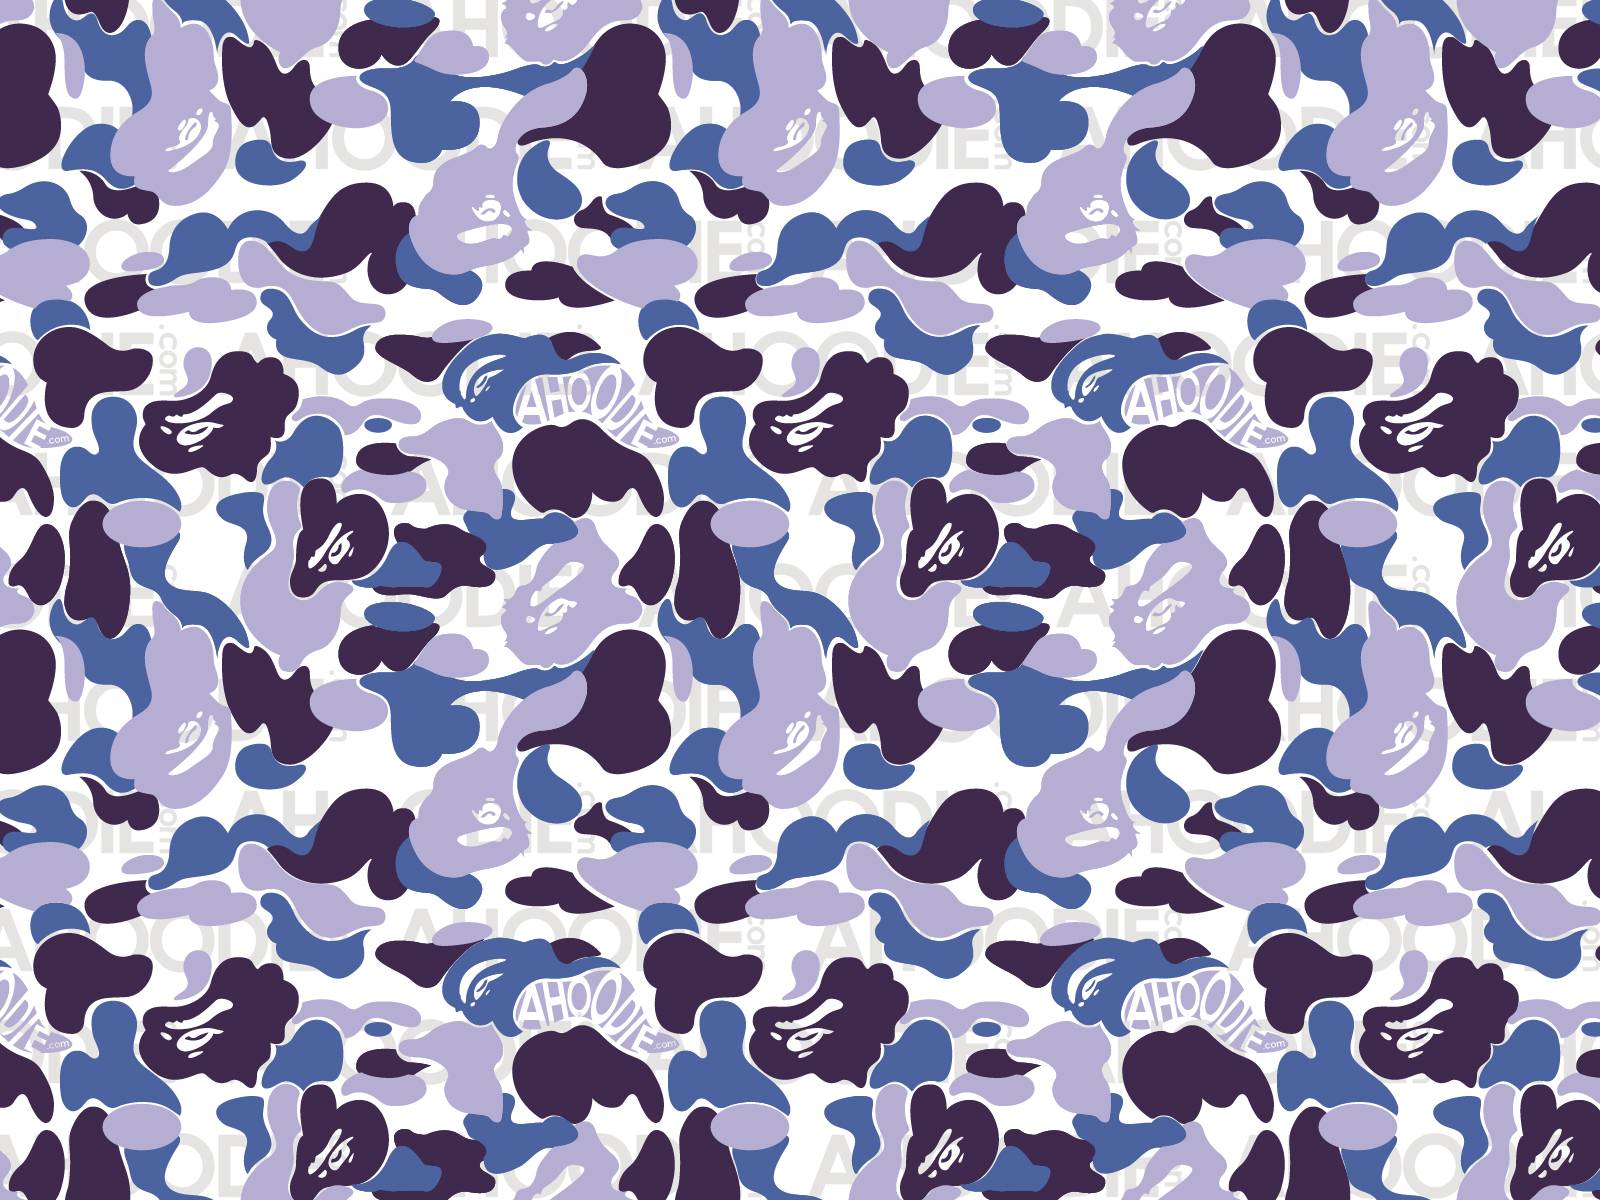 Camouflage Desktop Wallpapers - Wallpaper Cave